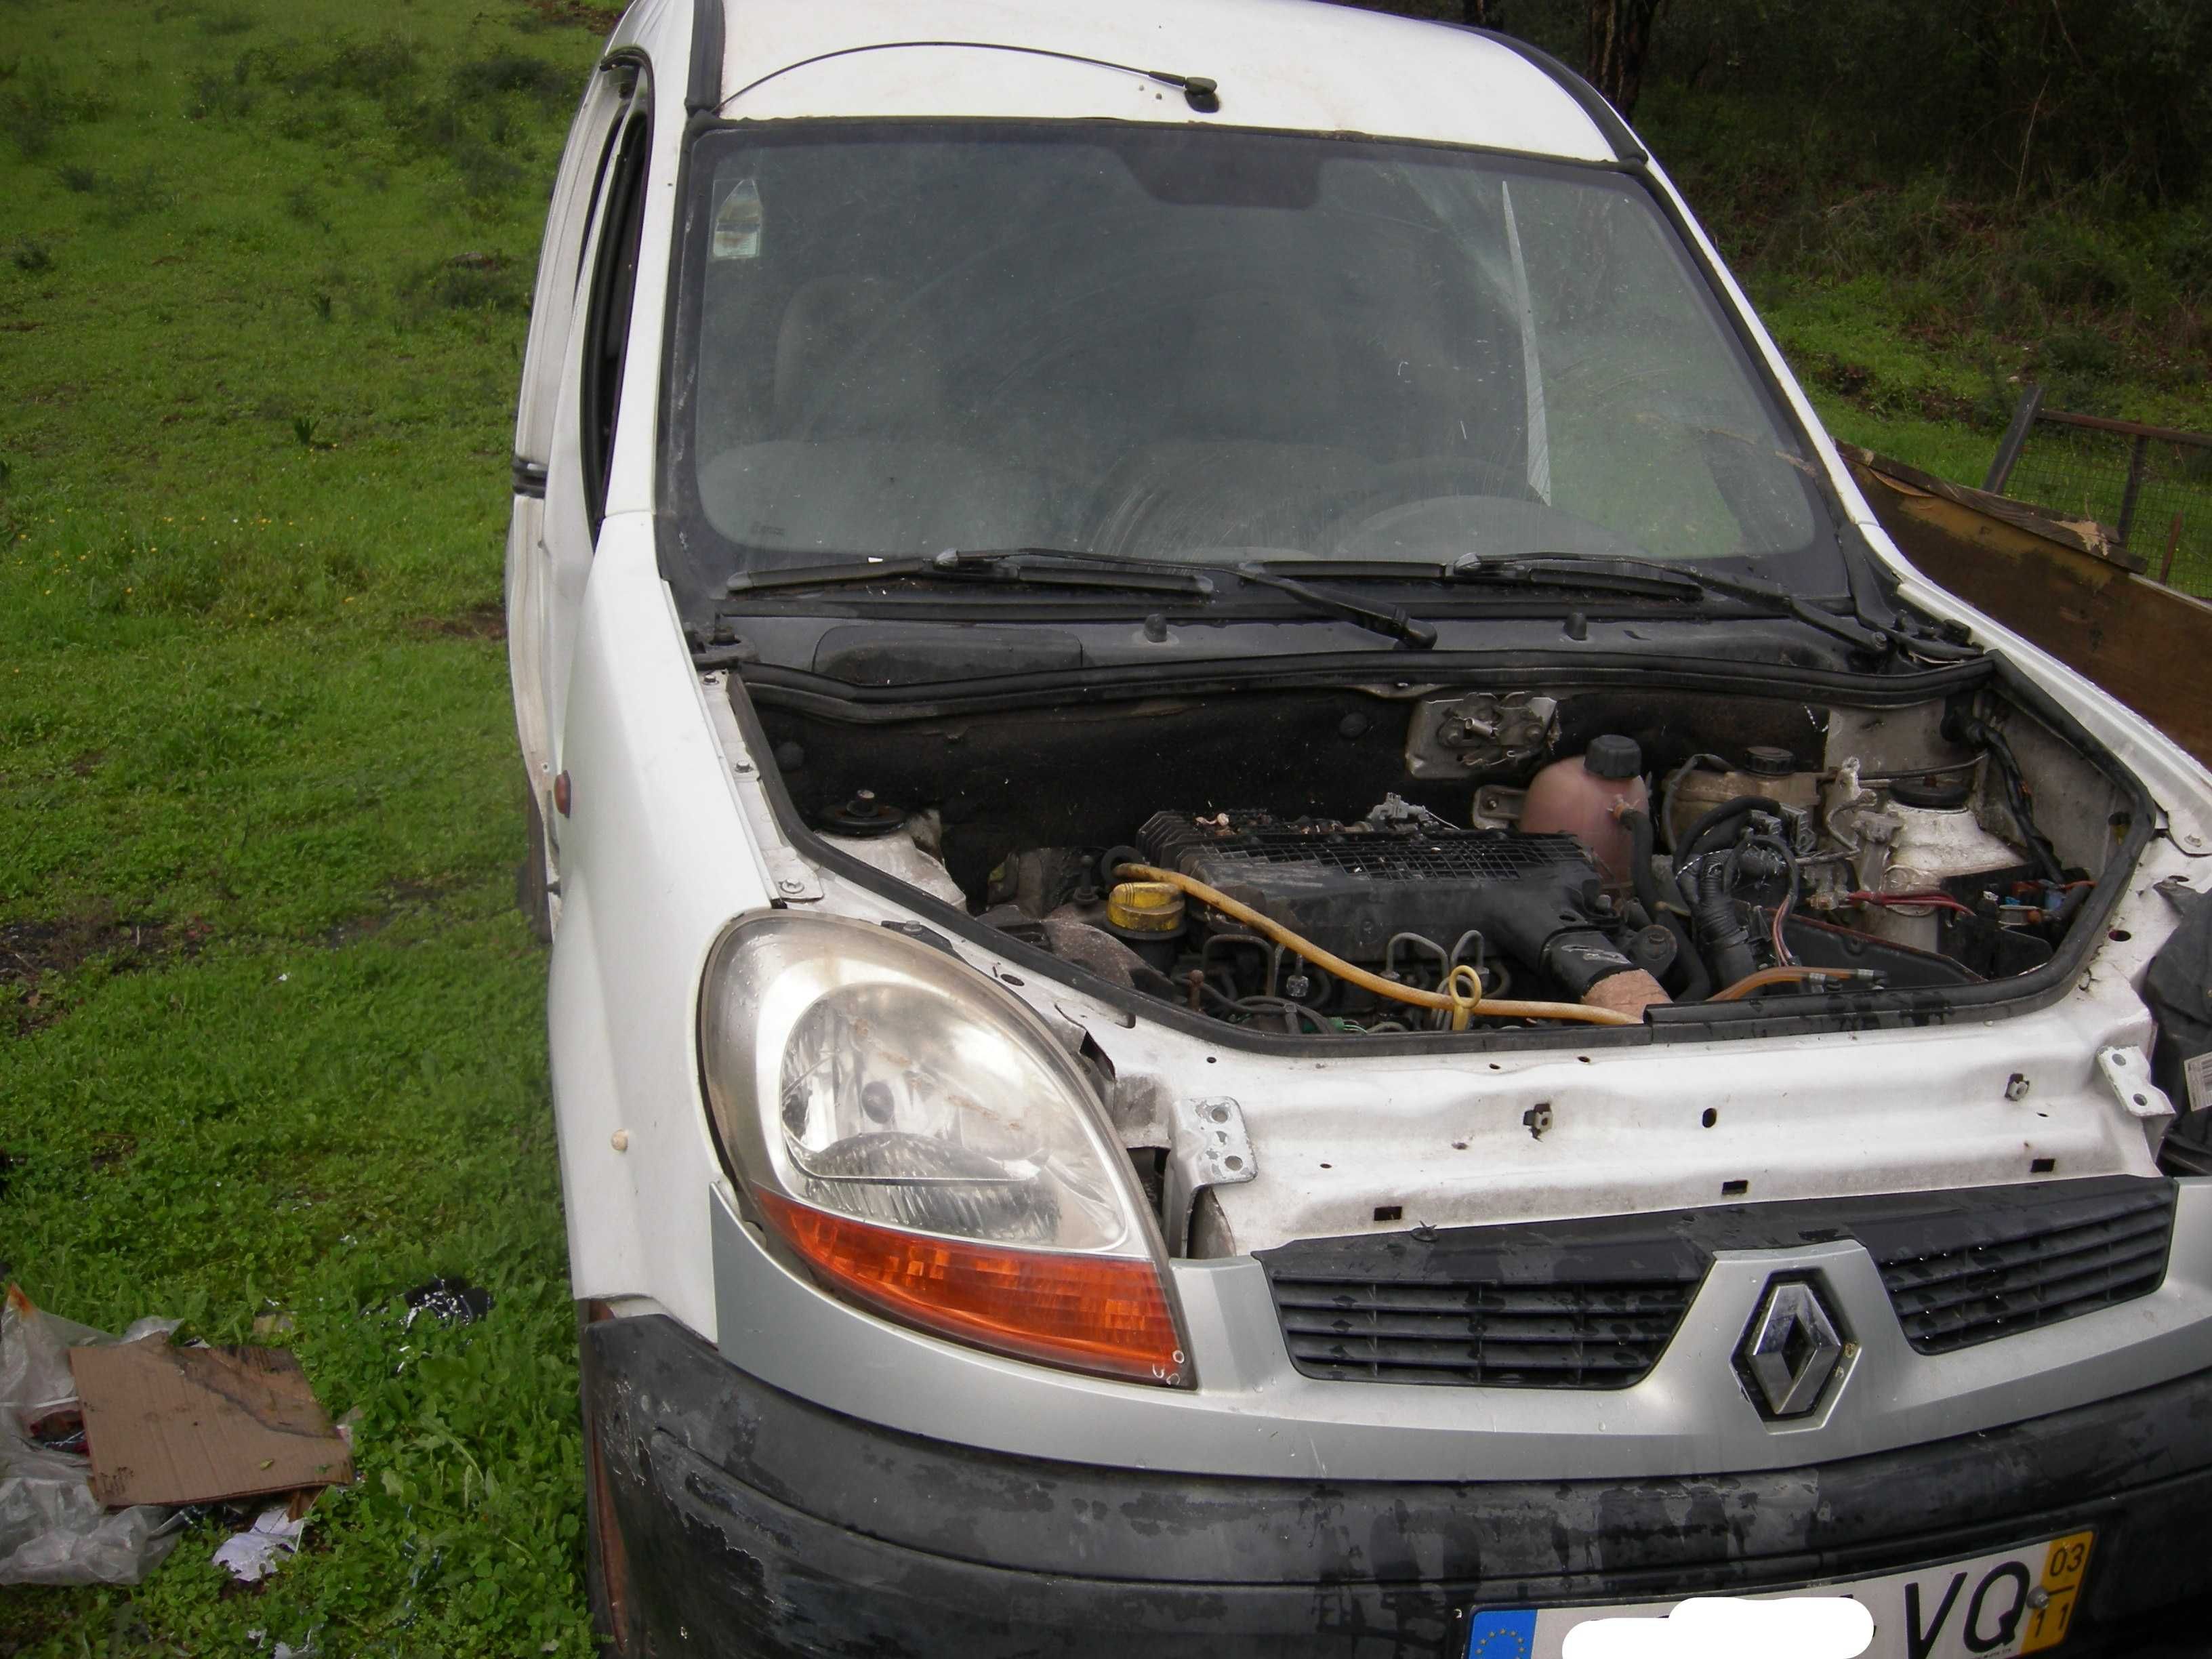 Renault Kangoo 2003 para peças